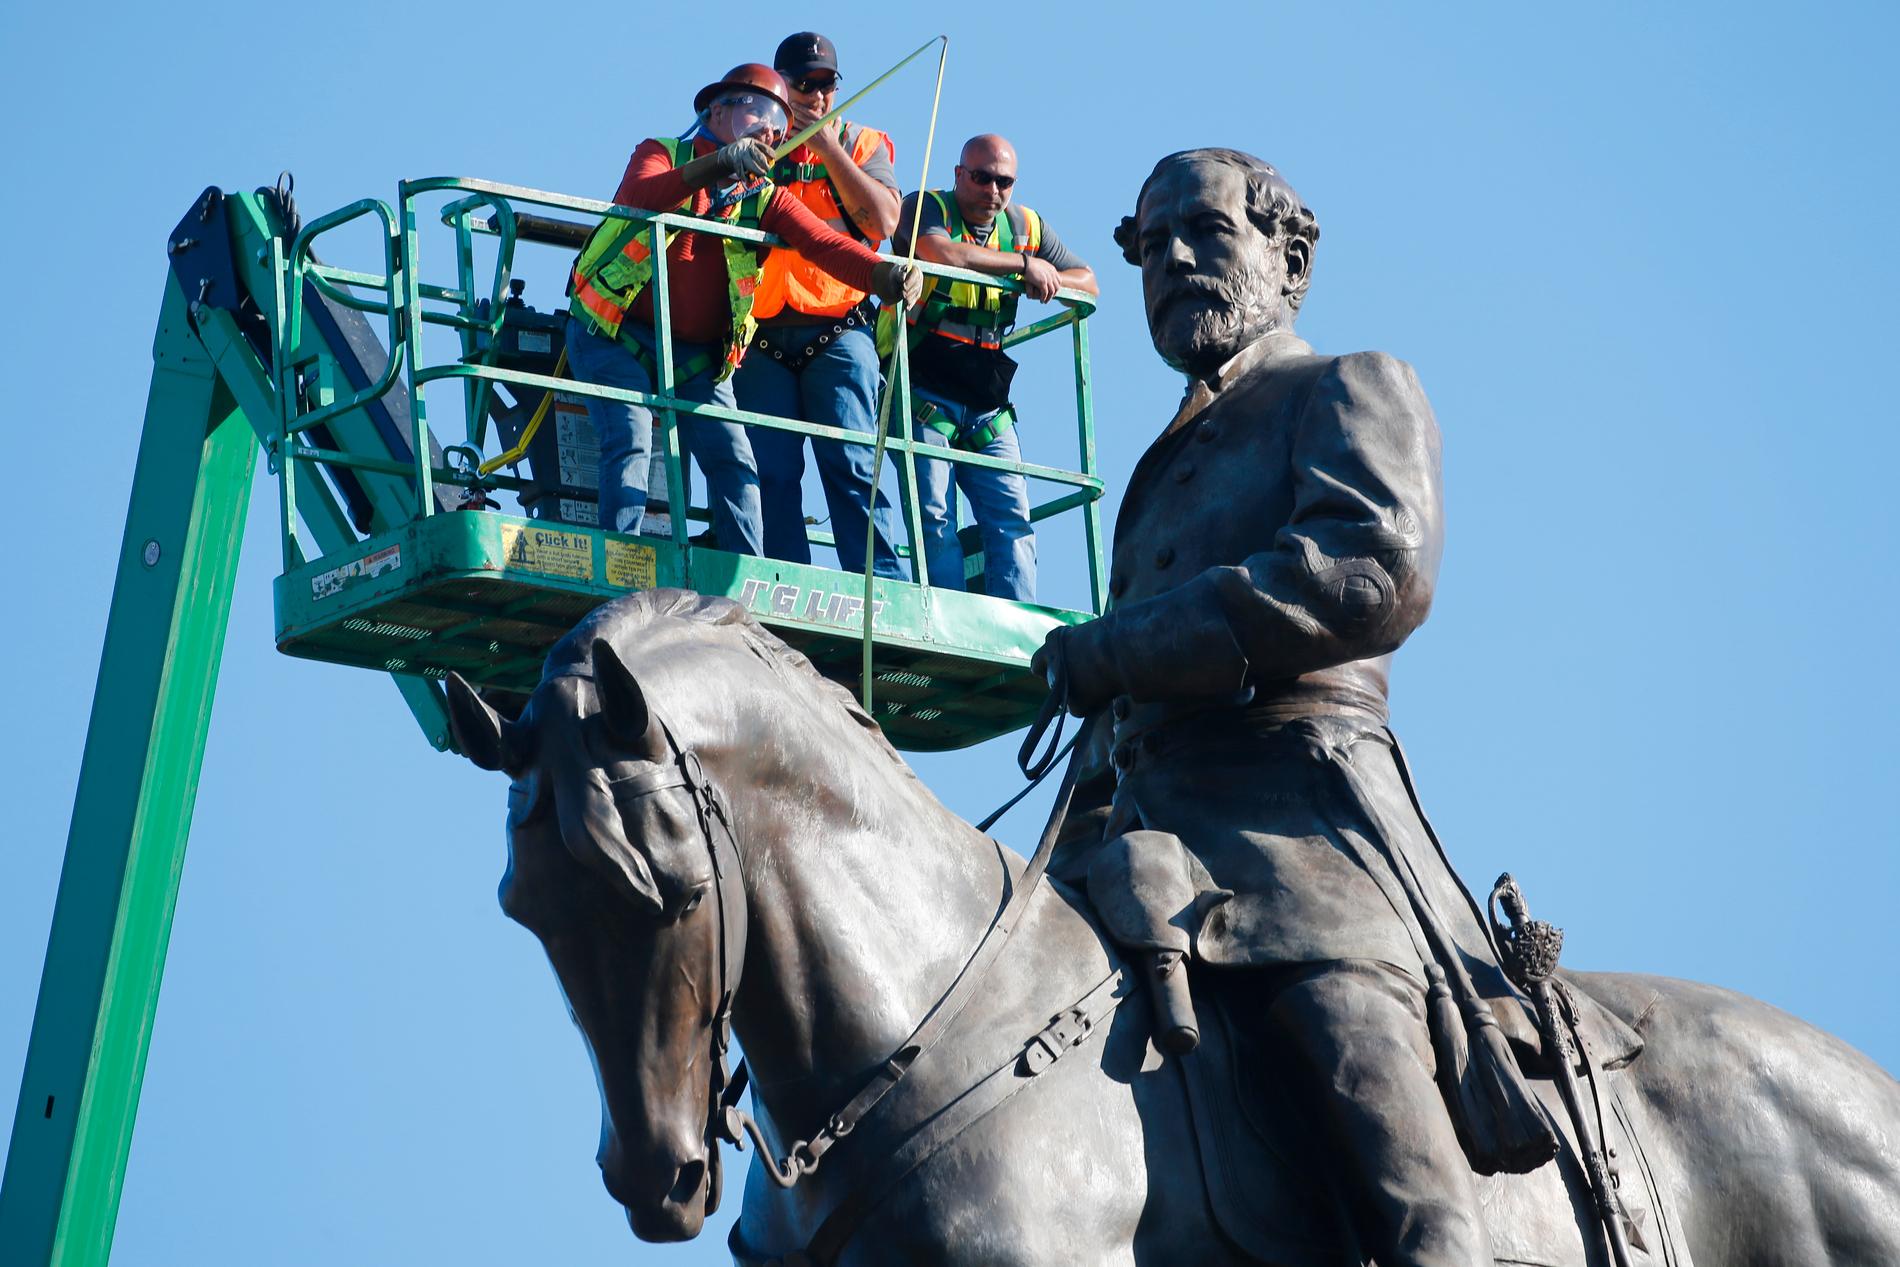 En staty föreställande sydstatsgeneralen Robert E Lee i Richmond i Virginia undersöks. Virginias guvernör har fattat beslut om att statyn ska forslas bort men en federal domare har tillfälligt stoppat beslutet.